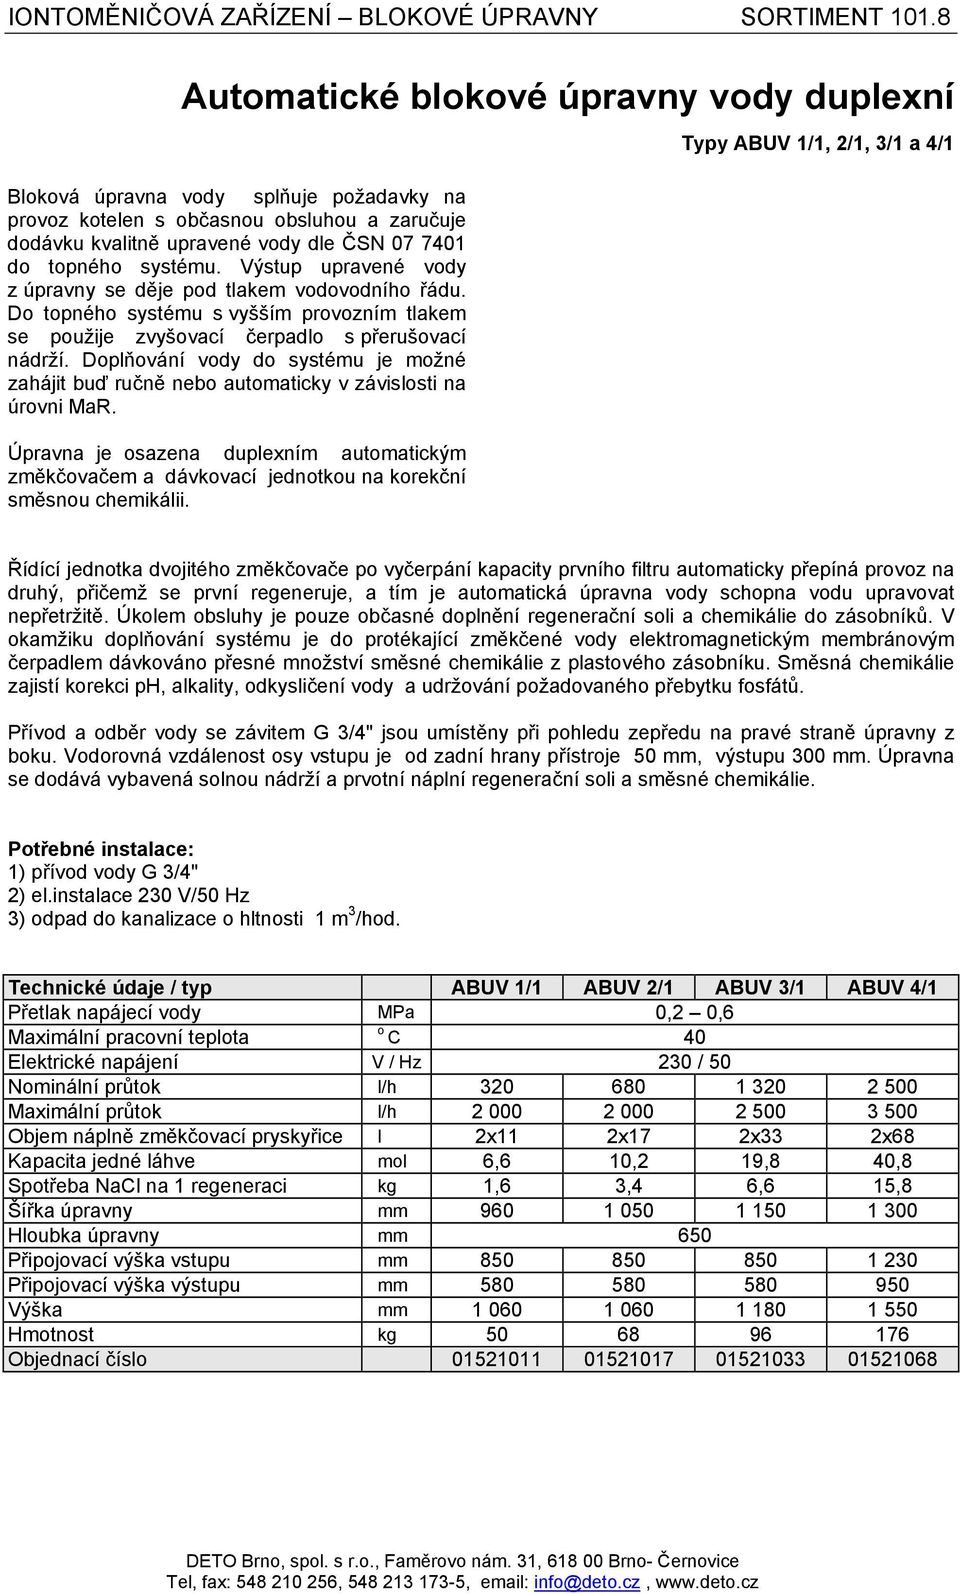 Sortiment 103 Membránové technologie a konduktometrie (stanice reverzní  osmózy, demineralizační zařízení, přístroje na měření vodivosti) - PDF  Stažení zdarma